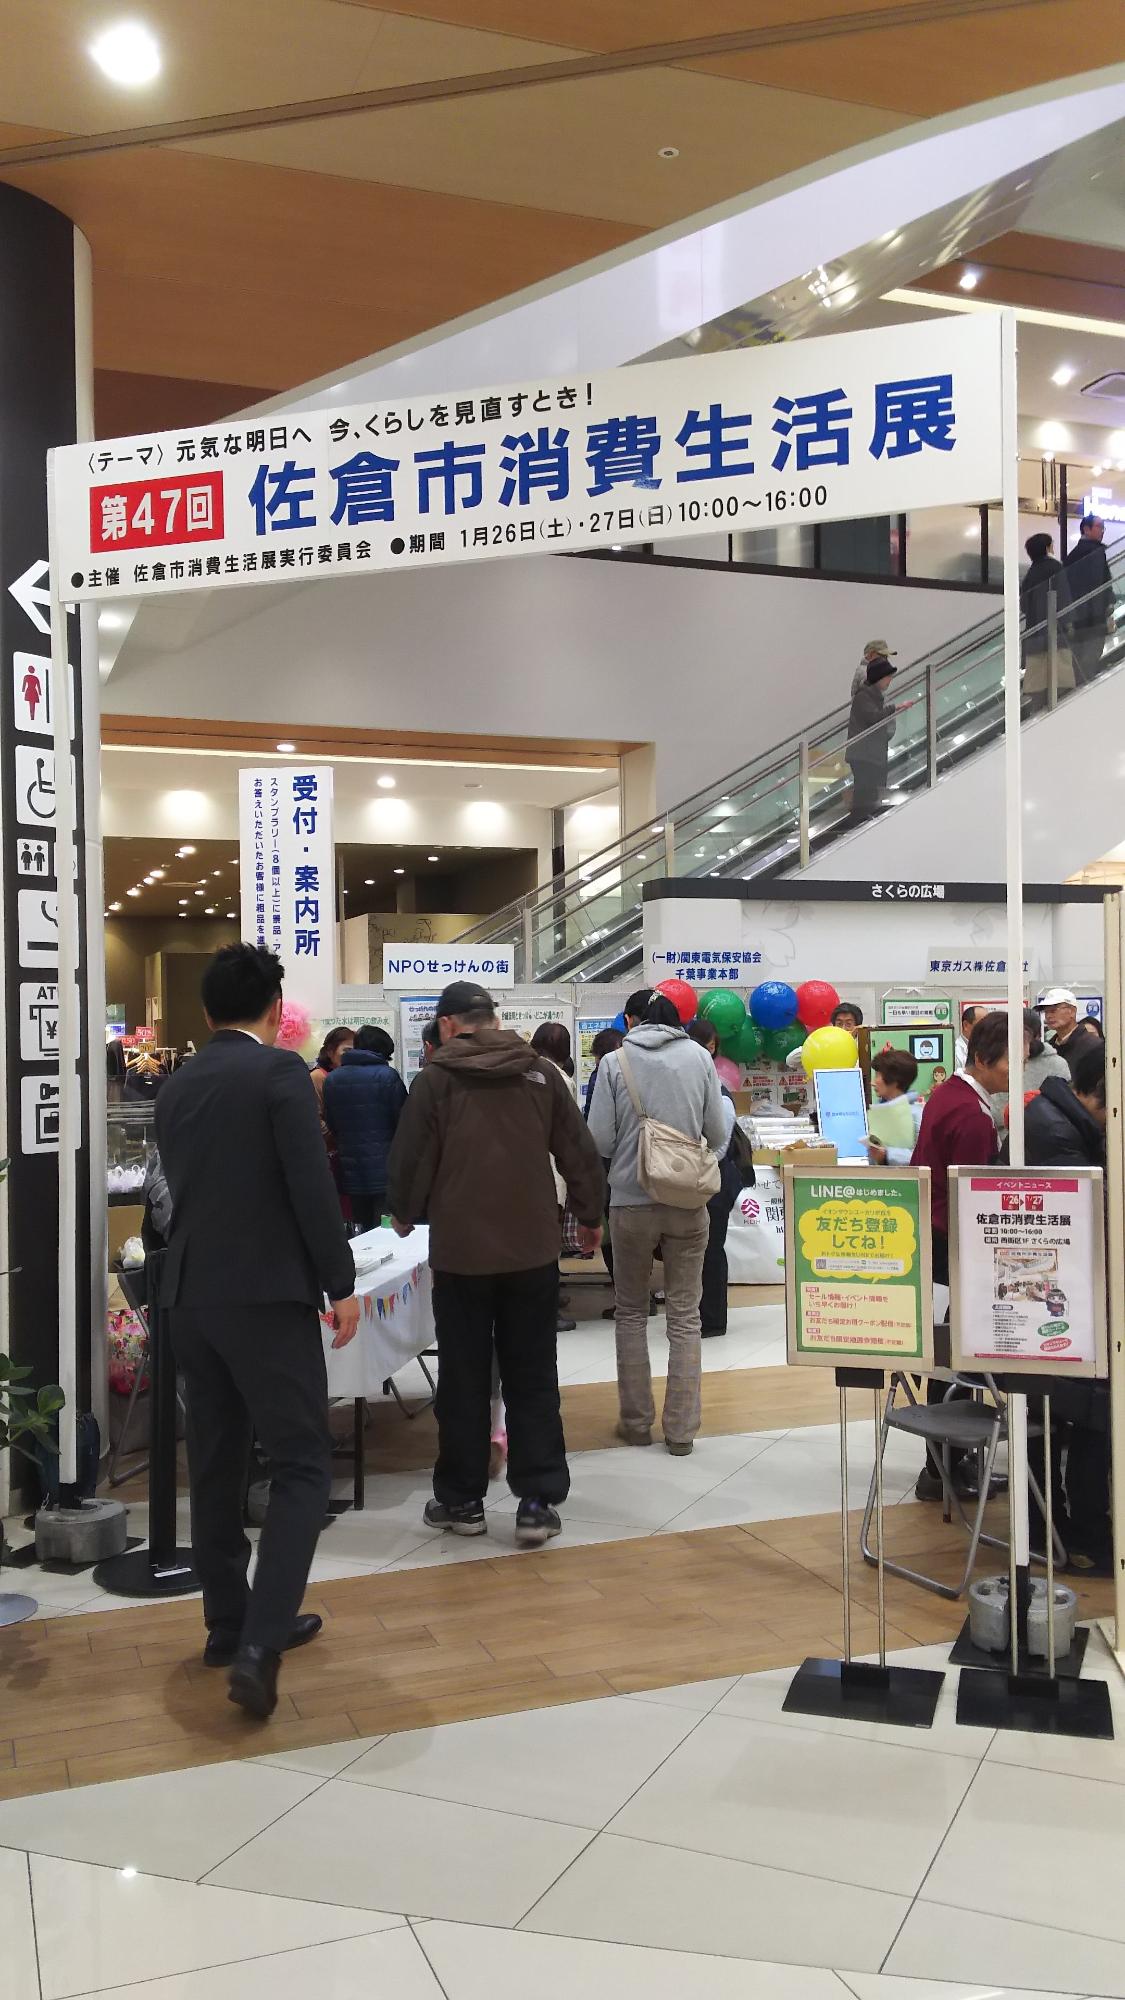 「第47回佐倉市消費生活展」と表示された会場、色々なパネルや品物が展示されており、沢山の来場者で賑わっている様子の写真